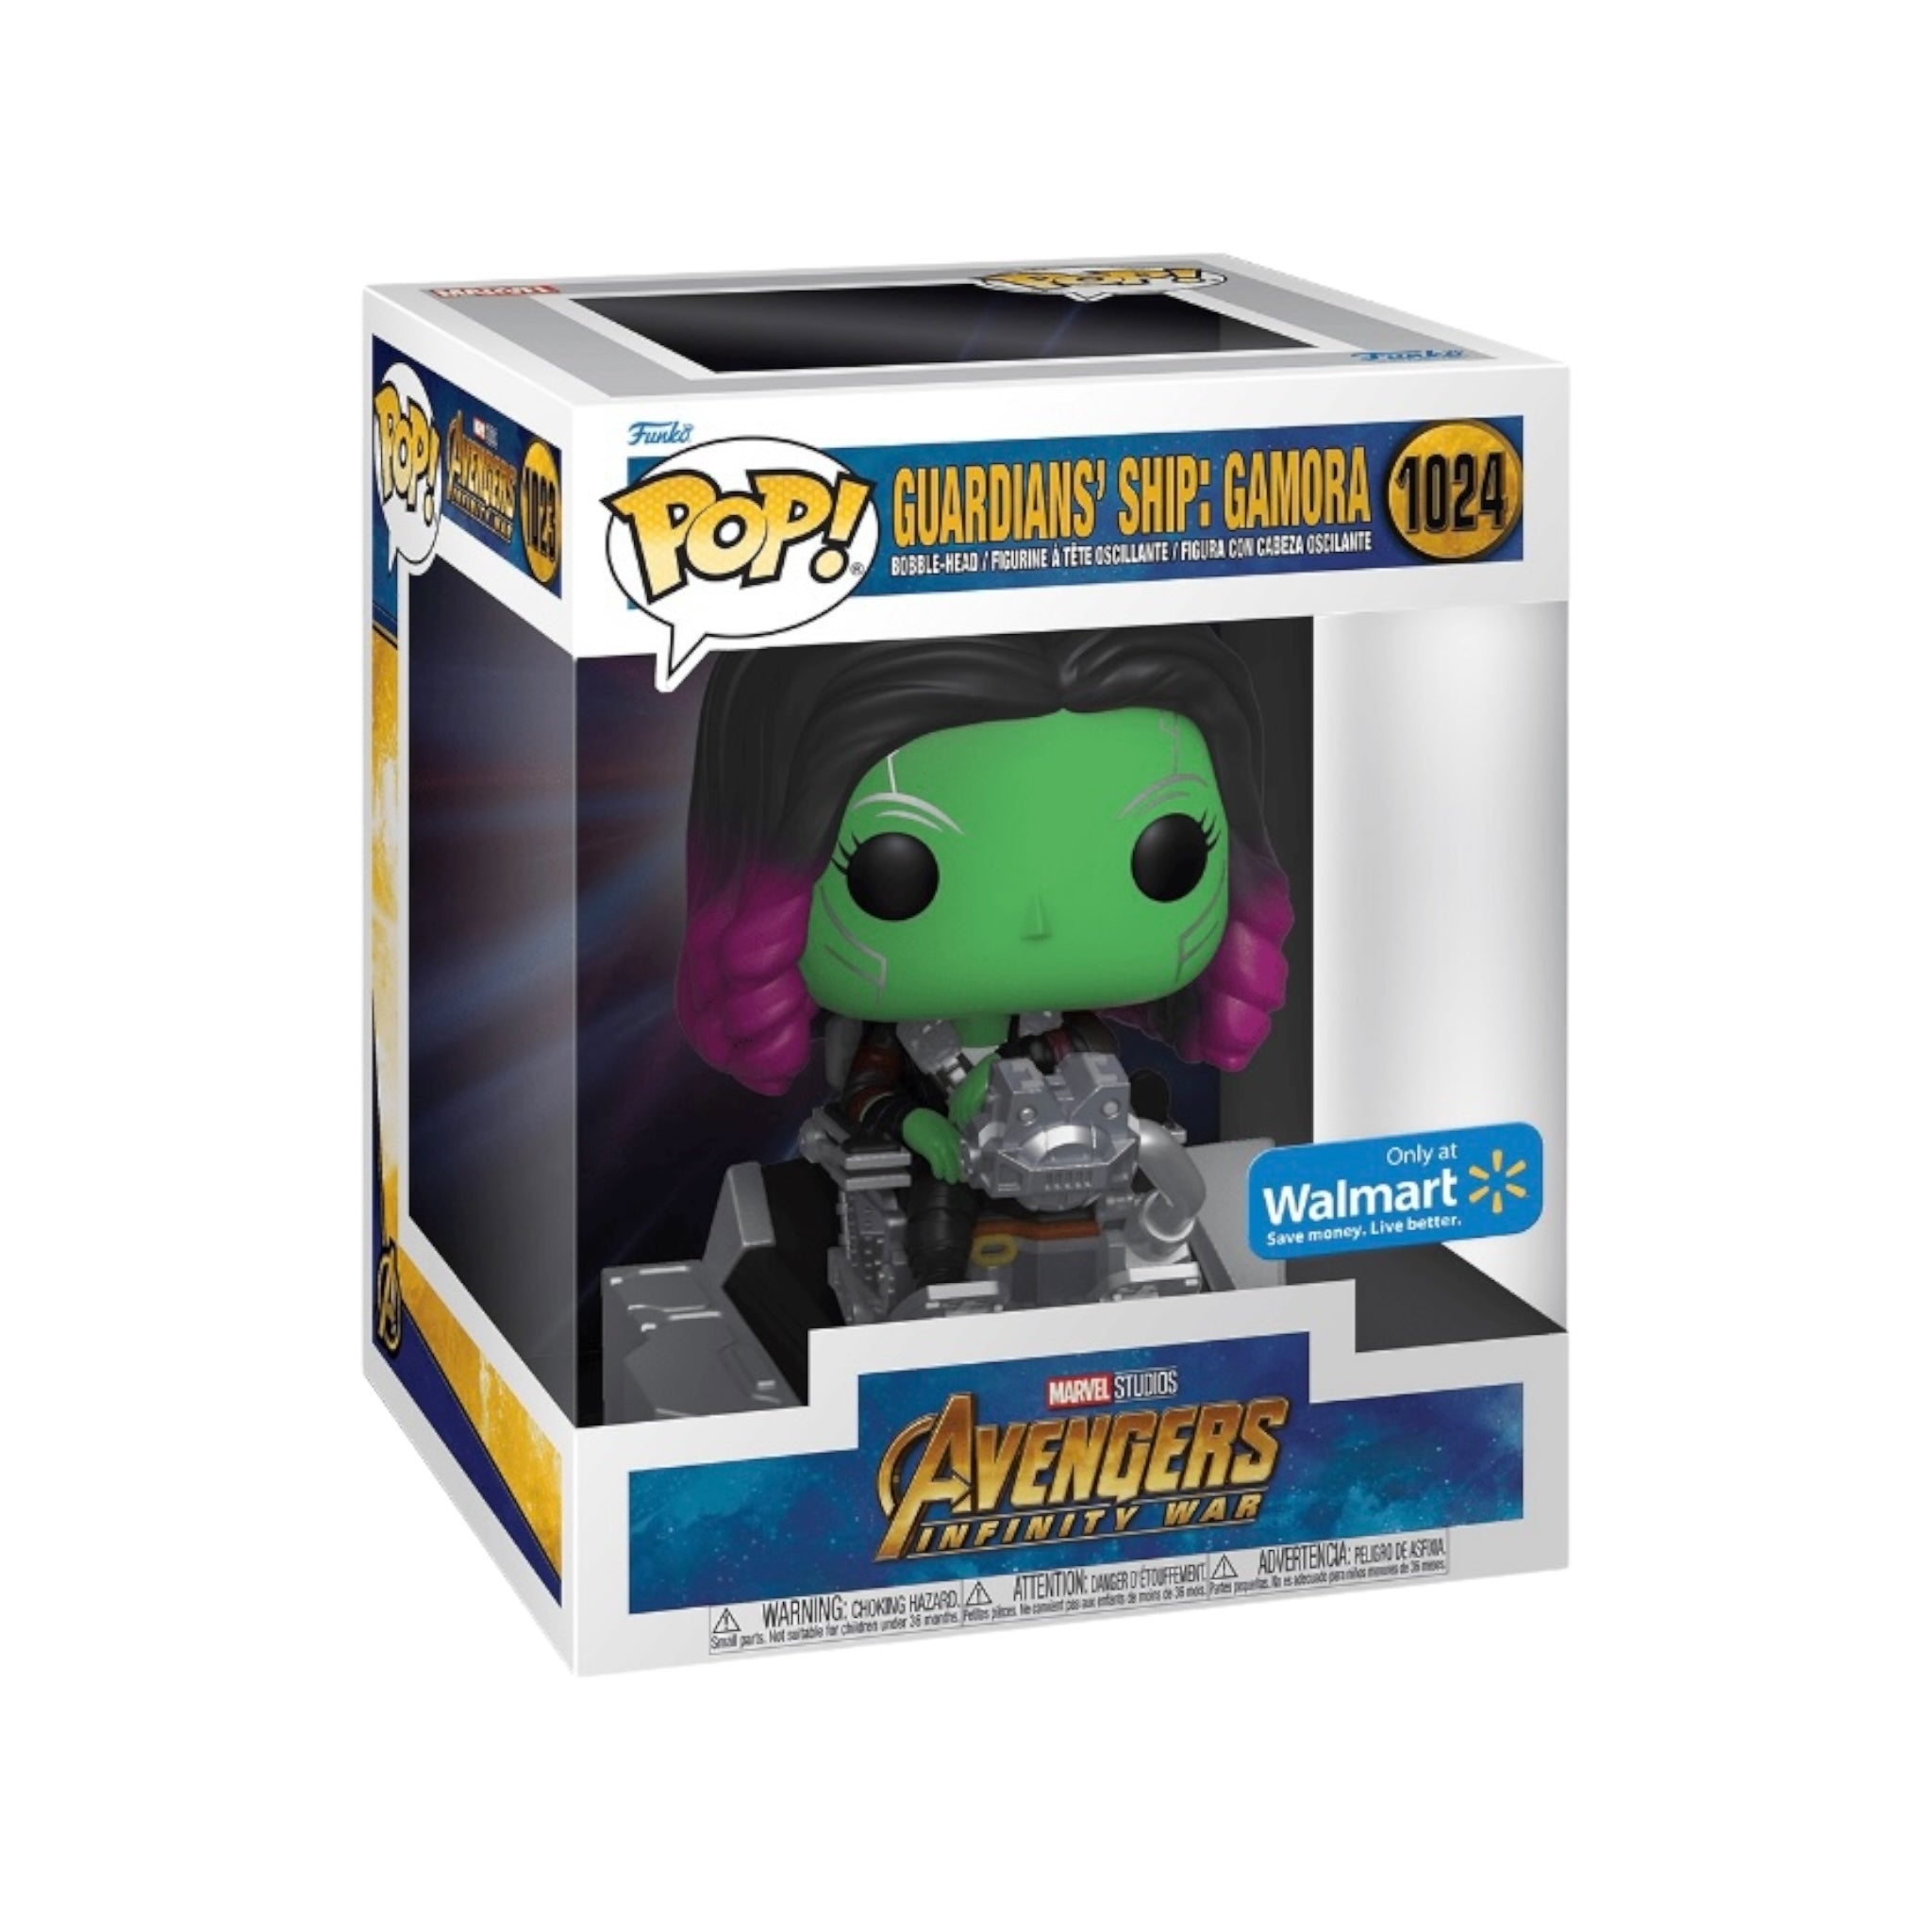 Guardians' Ship: Gamora #1024 Deluxe Funko Pop! - Avengers: Infinity War - Walmart Exclusive